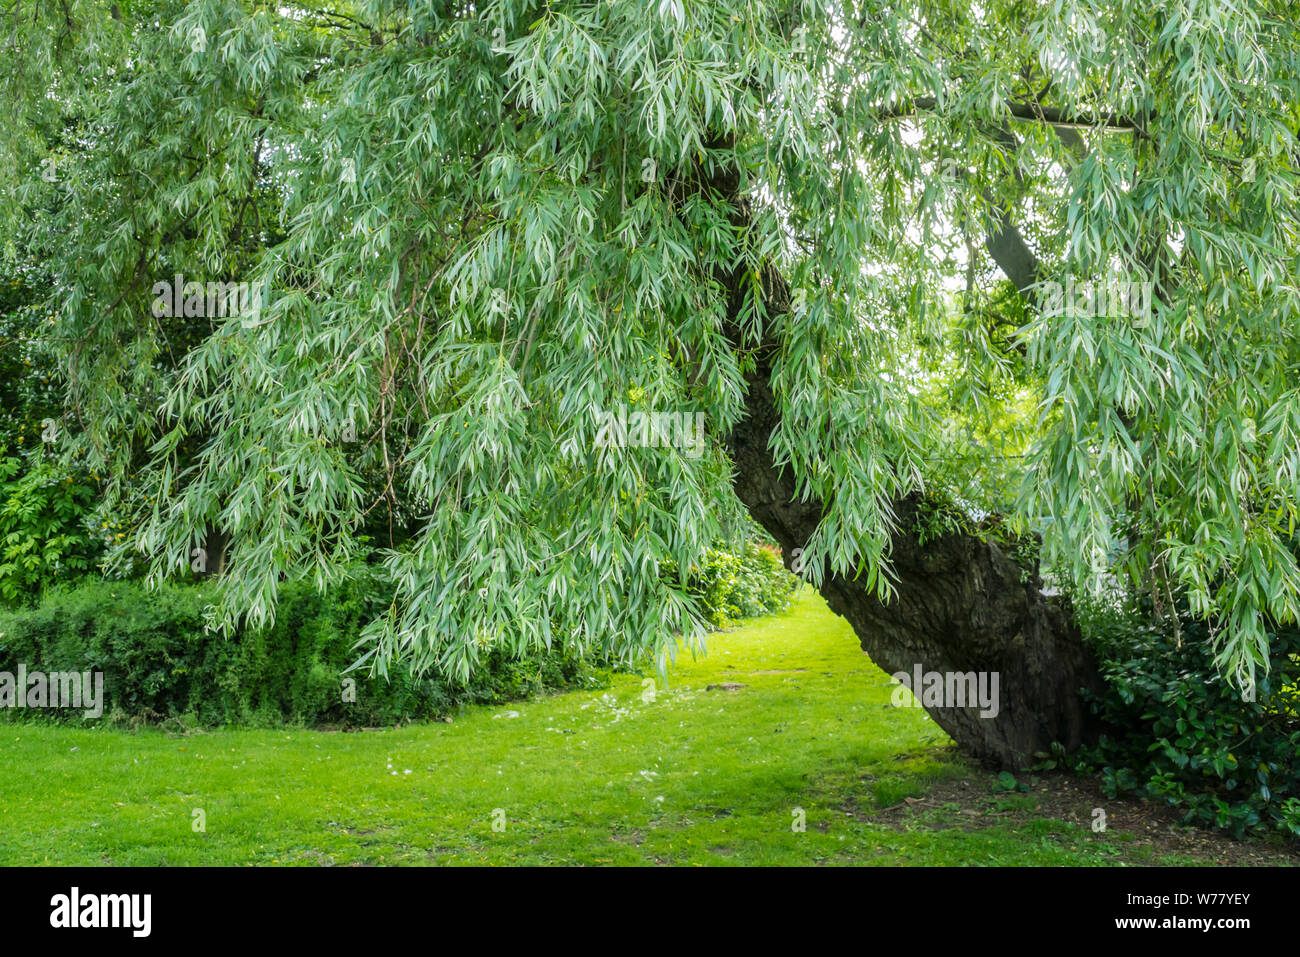 Un saule pleureur (Salix babylonica) situé dans un parc public au Royaume-Uni Banque D'Images